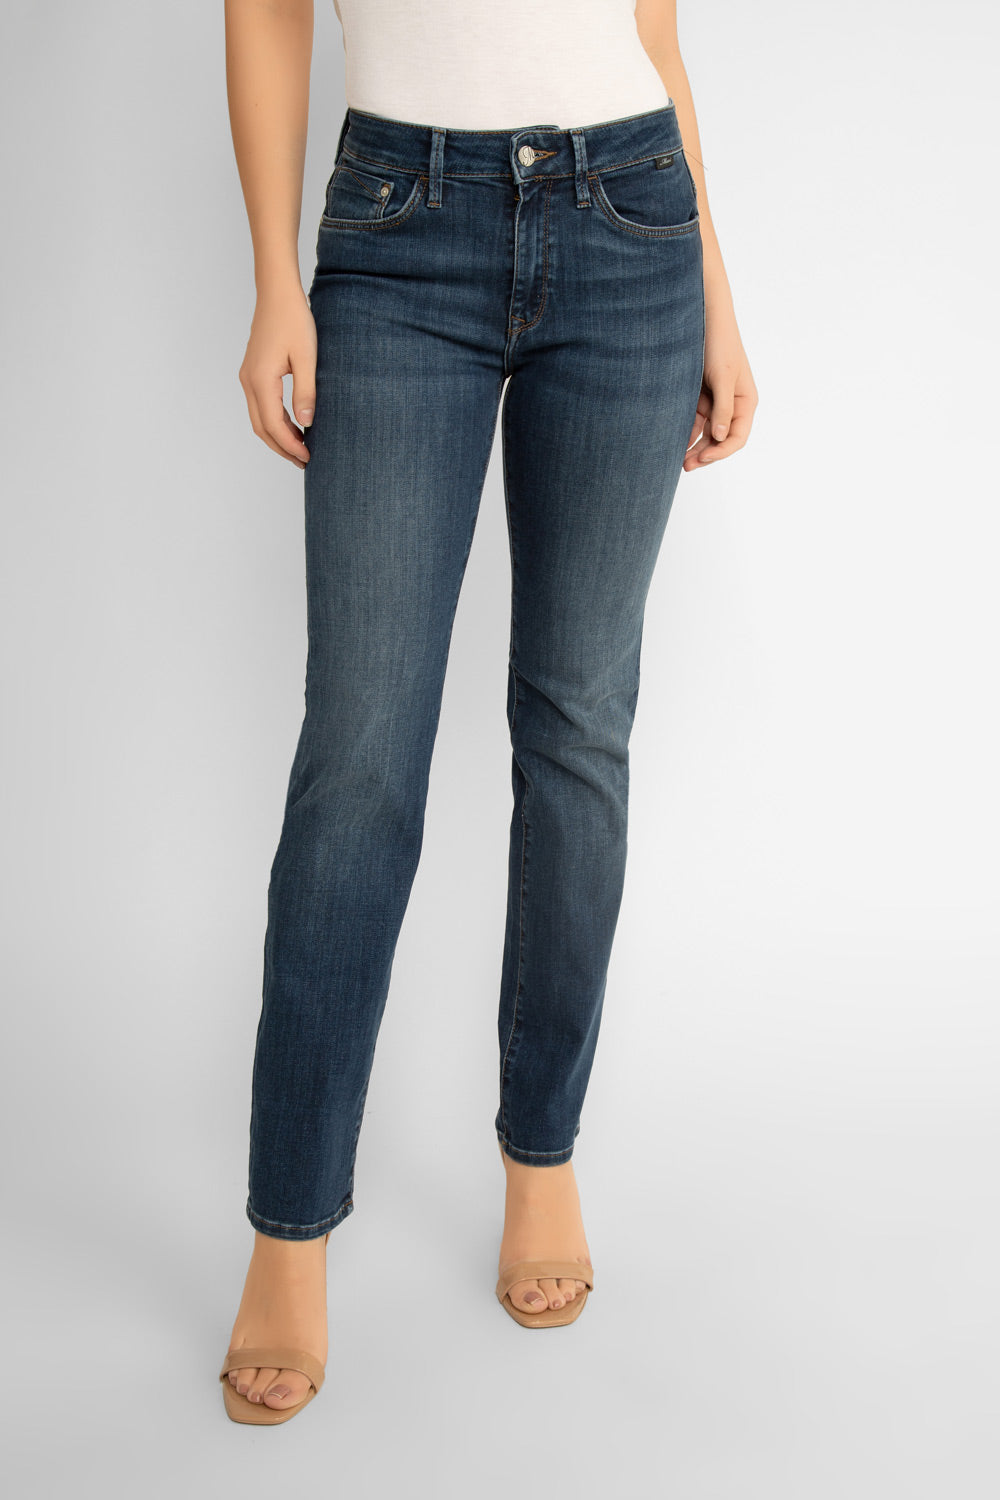 Mavi Kendra Supersoft Straight Cut Jeans